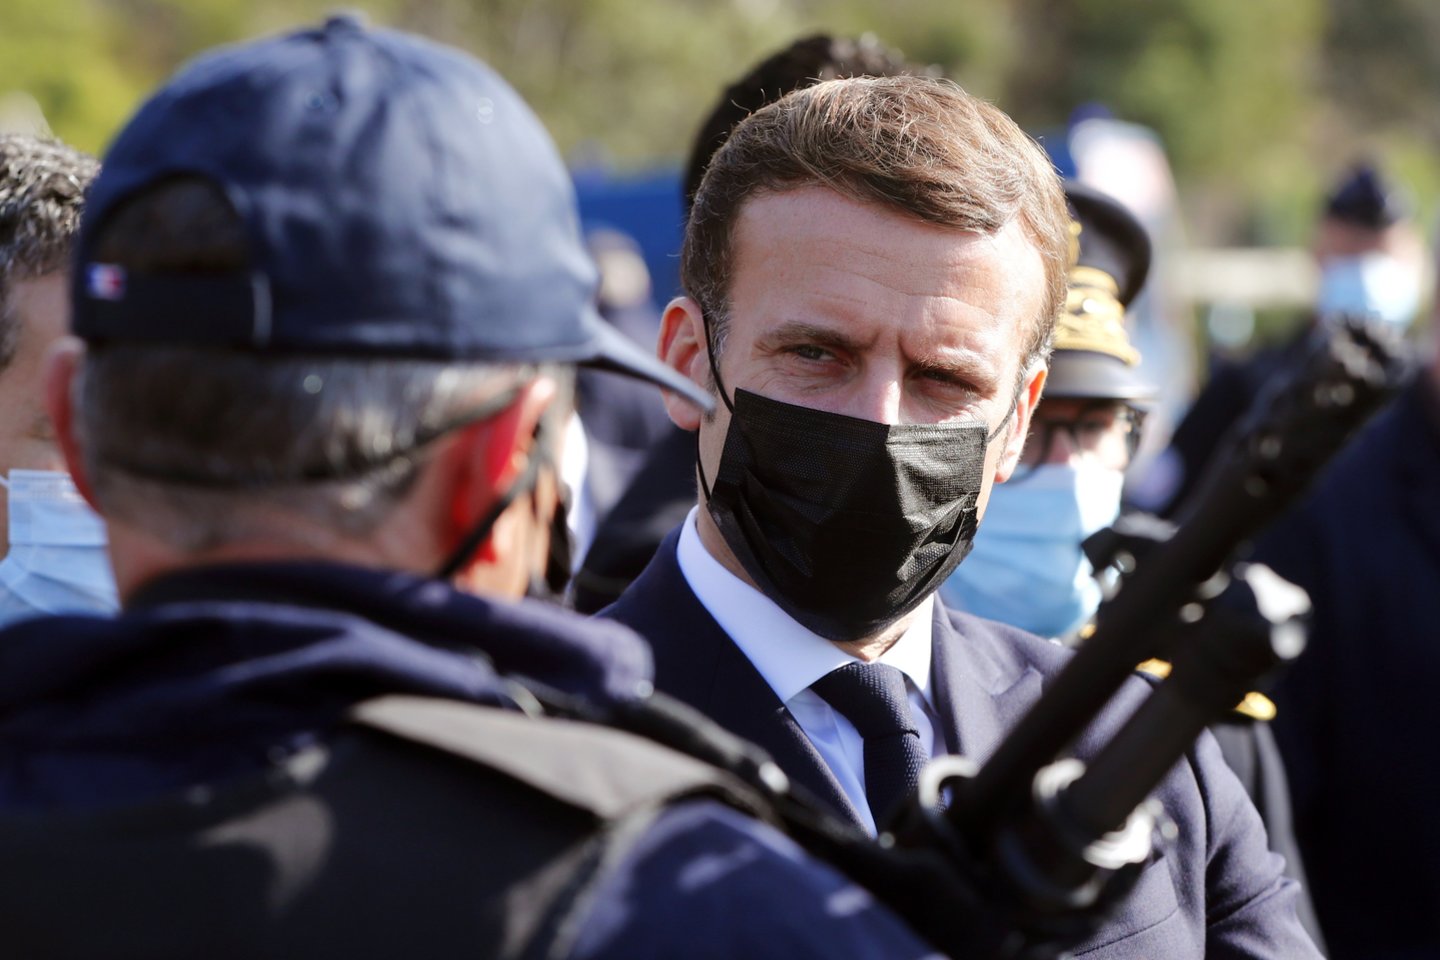  Prancūzijos prezidentas Emmanuelis Macronas penktadienį paskelbtame interviu apkaltino Rusiją ir Turkiją kurstant antiprancūziškas nuotaikas Afrikoje per finansavimą asmenų, kurie pasinaudodami žiniasklaida sėja nepasitenkinimą Prancūzija.<br>Reuters/Scanpix nuotr.